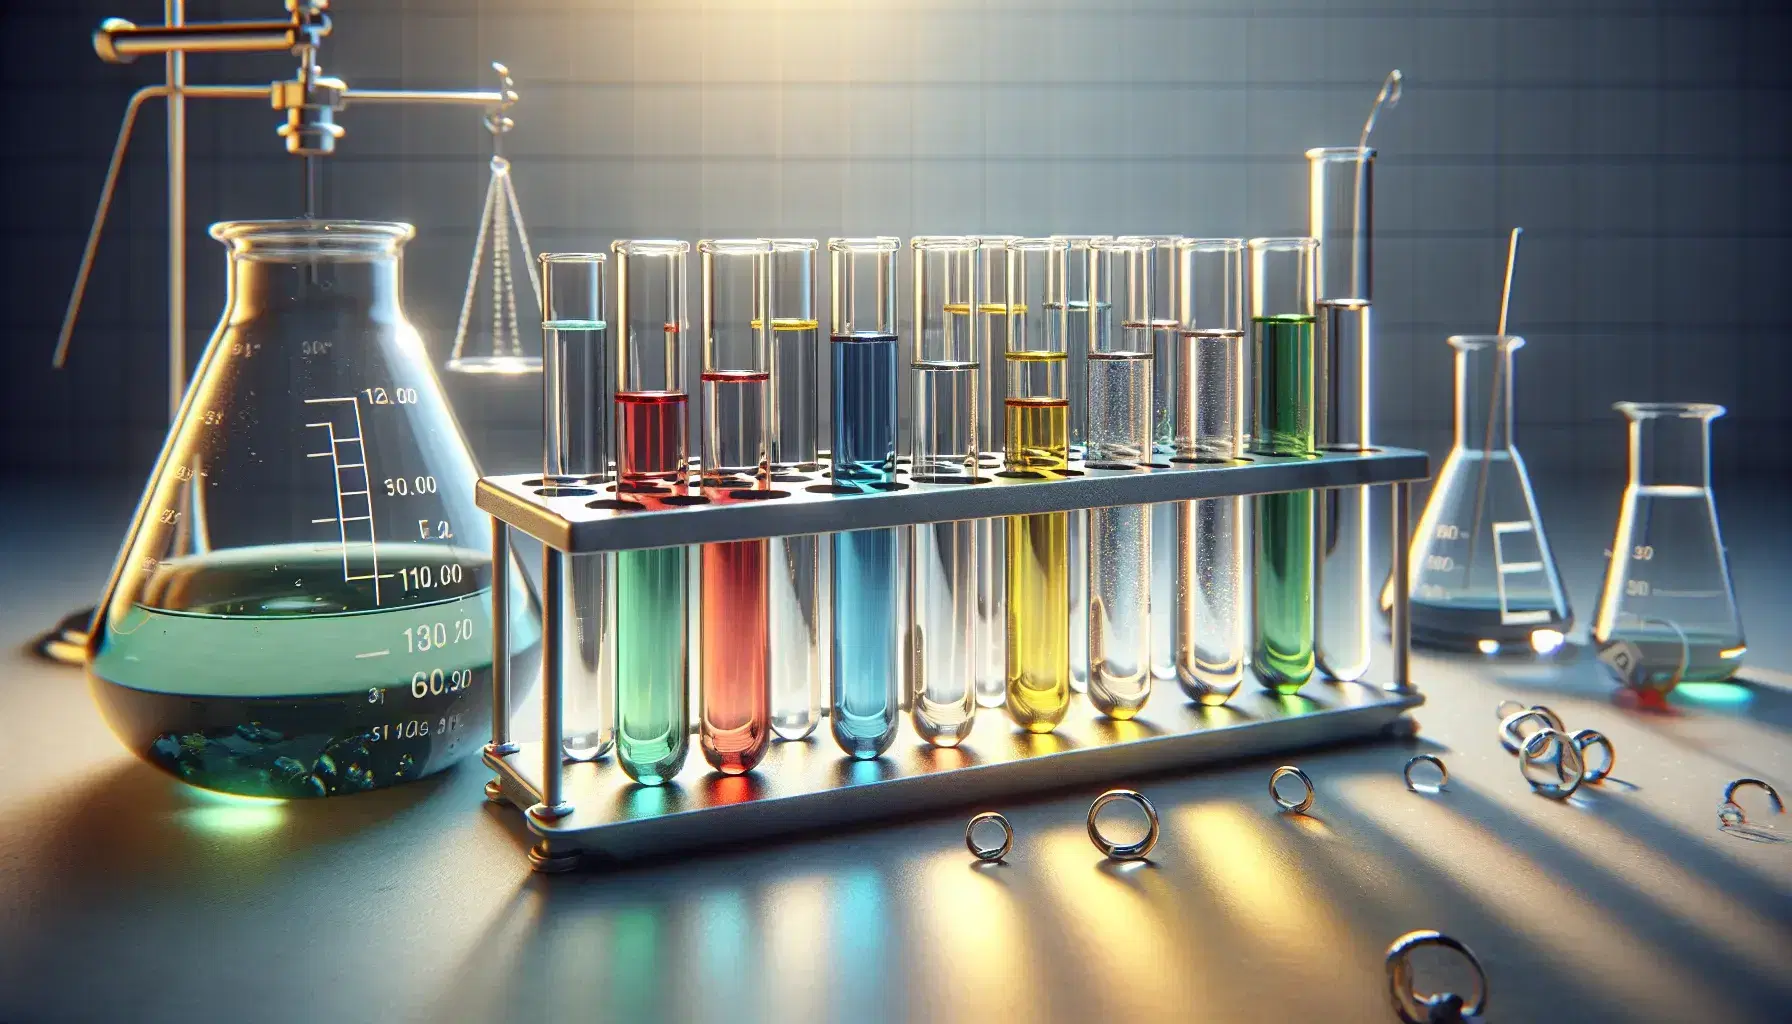 Tubos de ensayo con líquidos de colores rojo, azul, verde, amarillo y transparente en soporte metálico con balanza analítica y matraz Erlenmeyer en laboratorio.